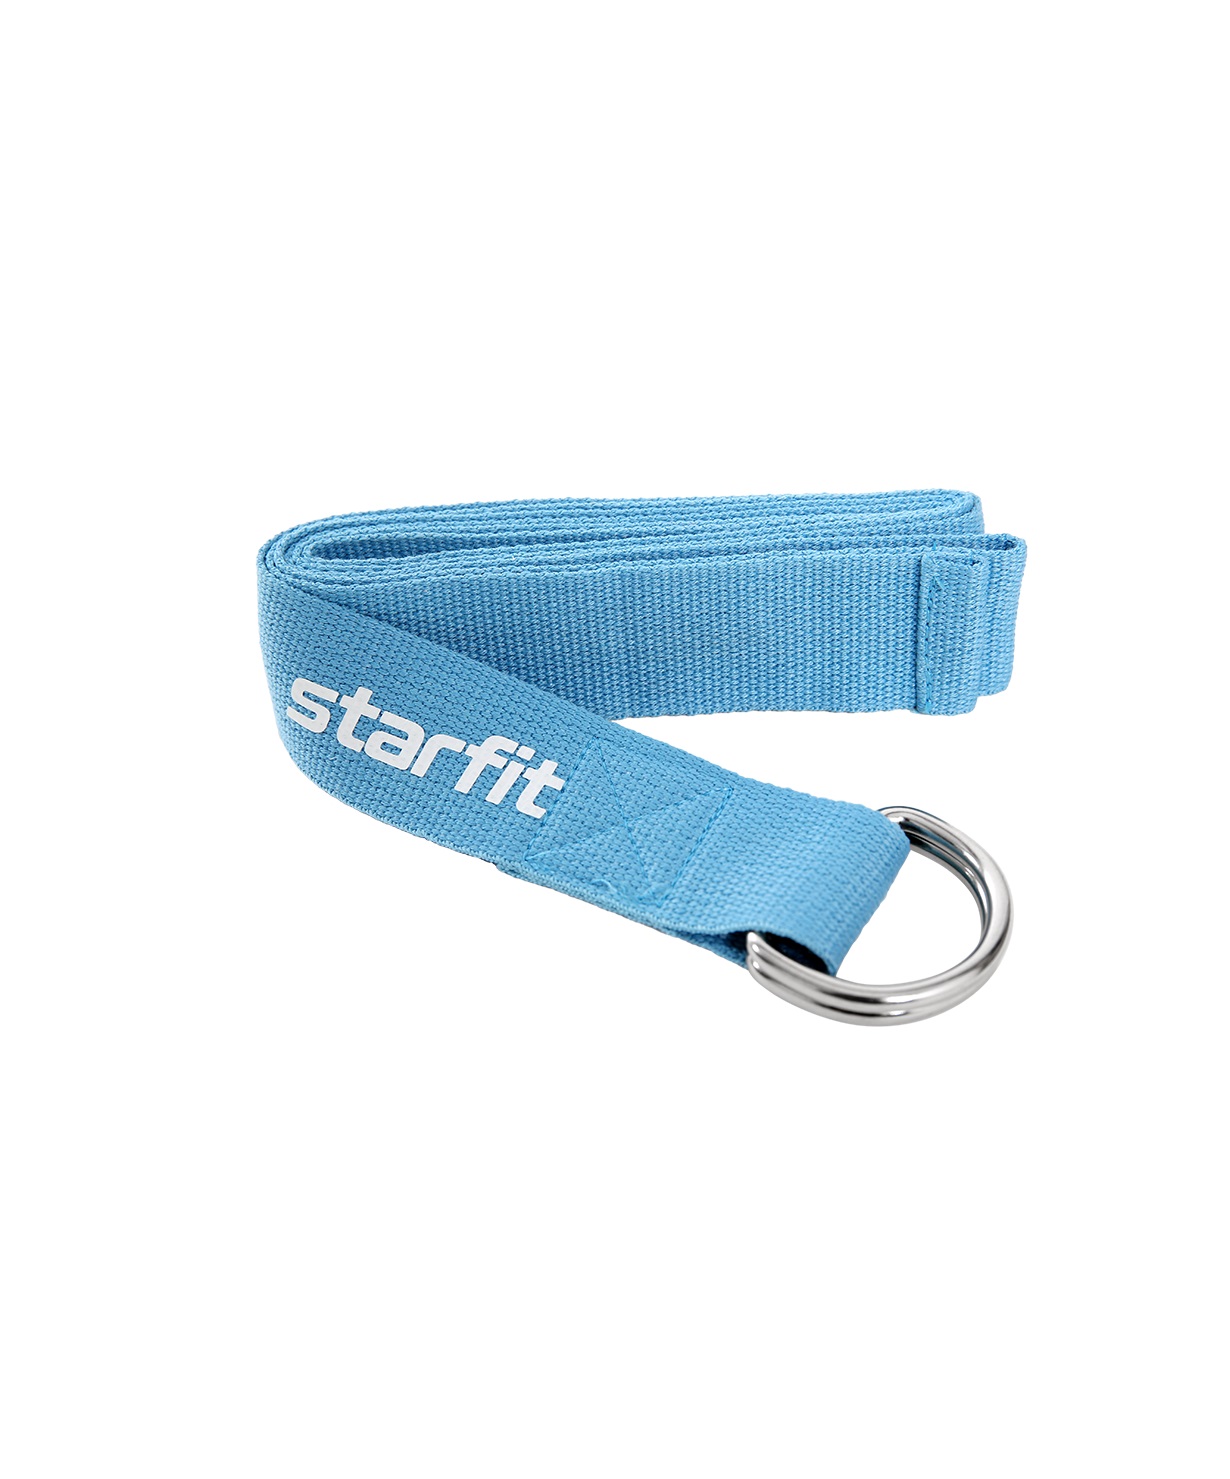 Ремень для йоги Starfit Core Yb-100 176 см, хлопок, синий пастель